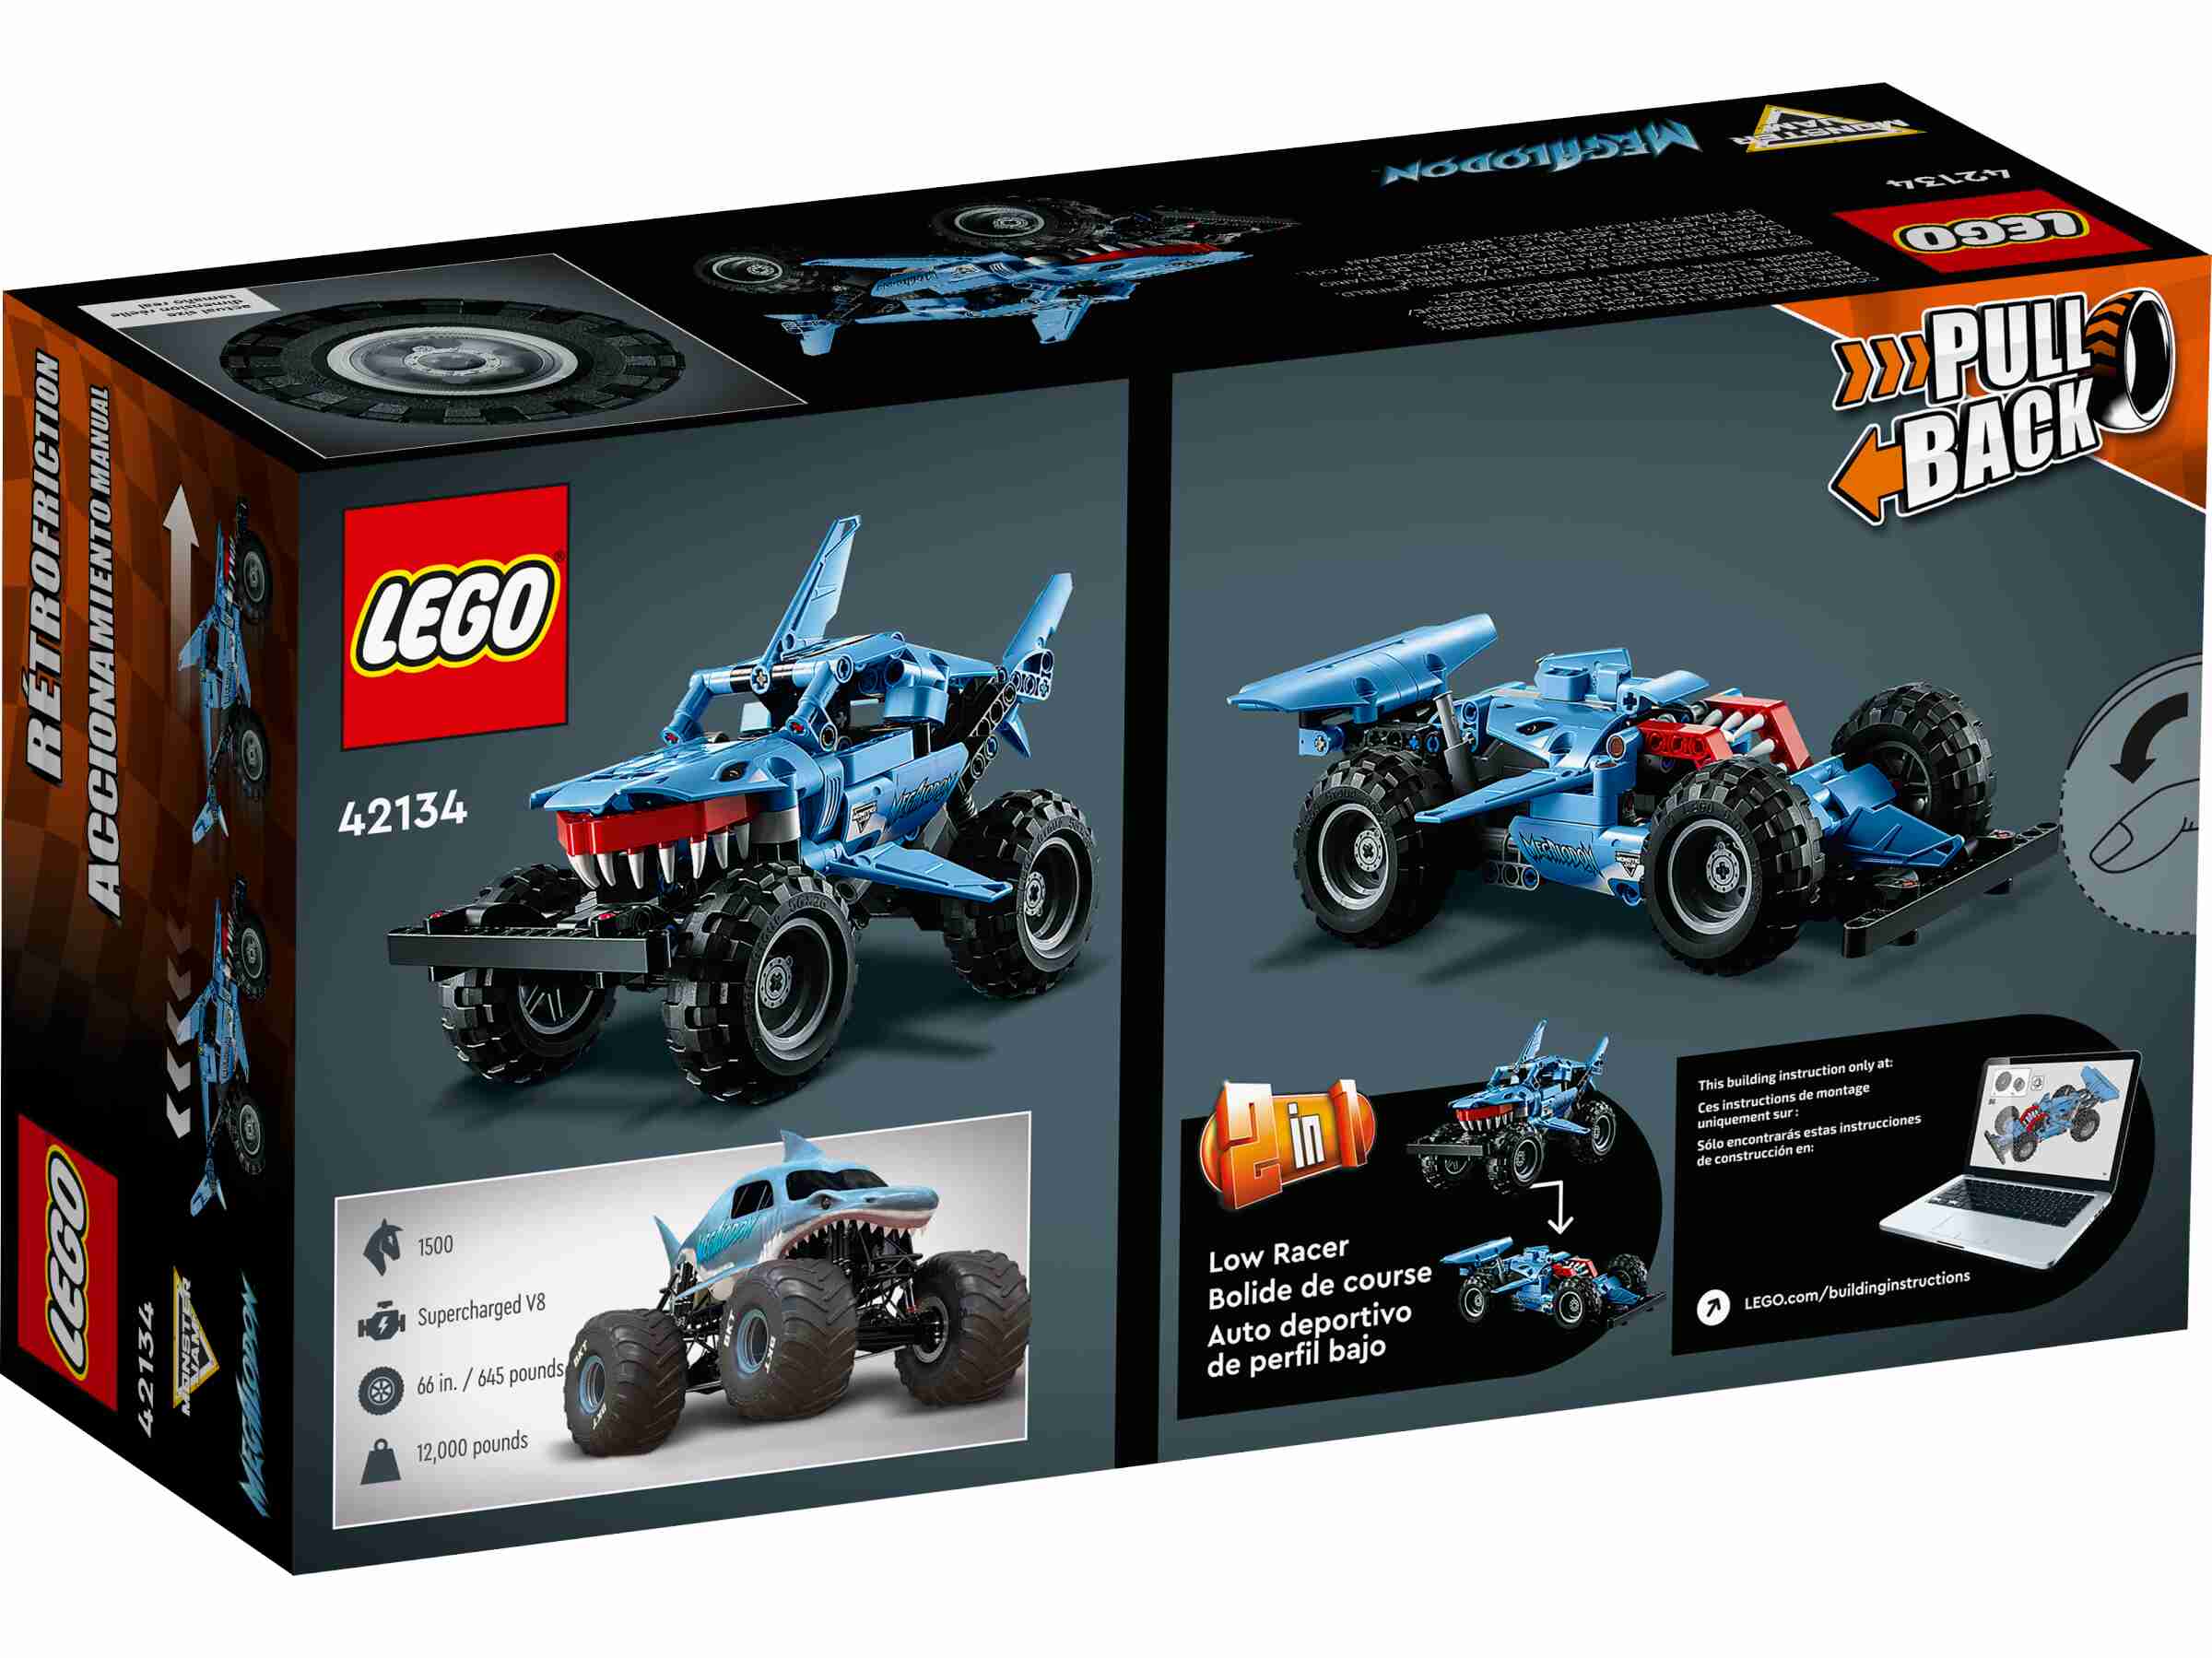 LEGO 42134 Technic Monster Jam Megalodon, Hai-Monstertruck